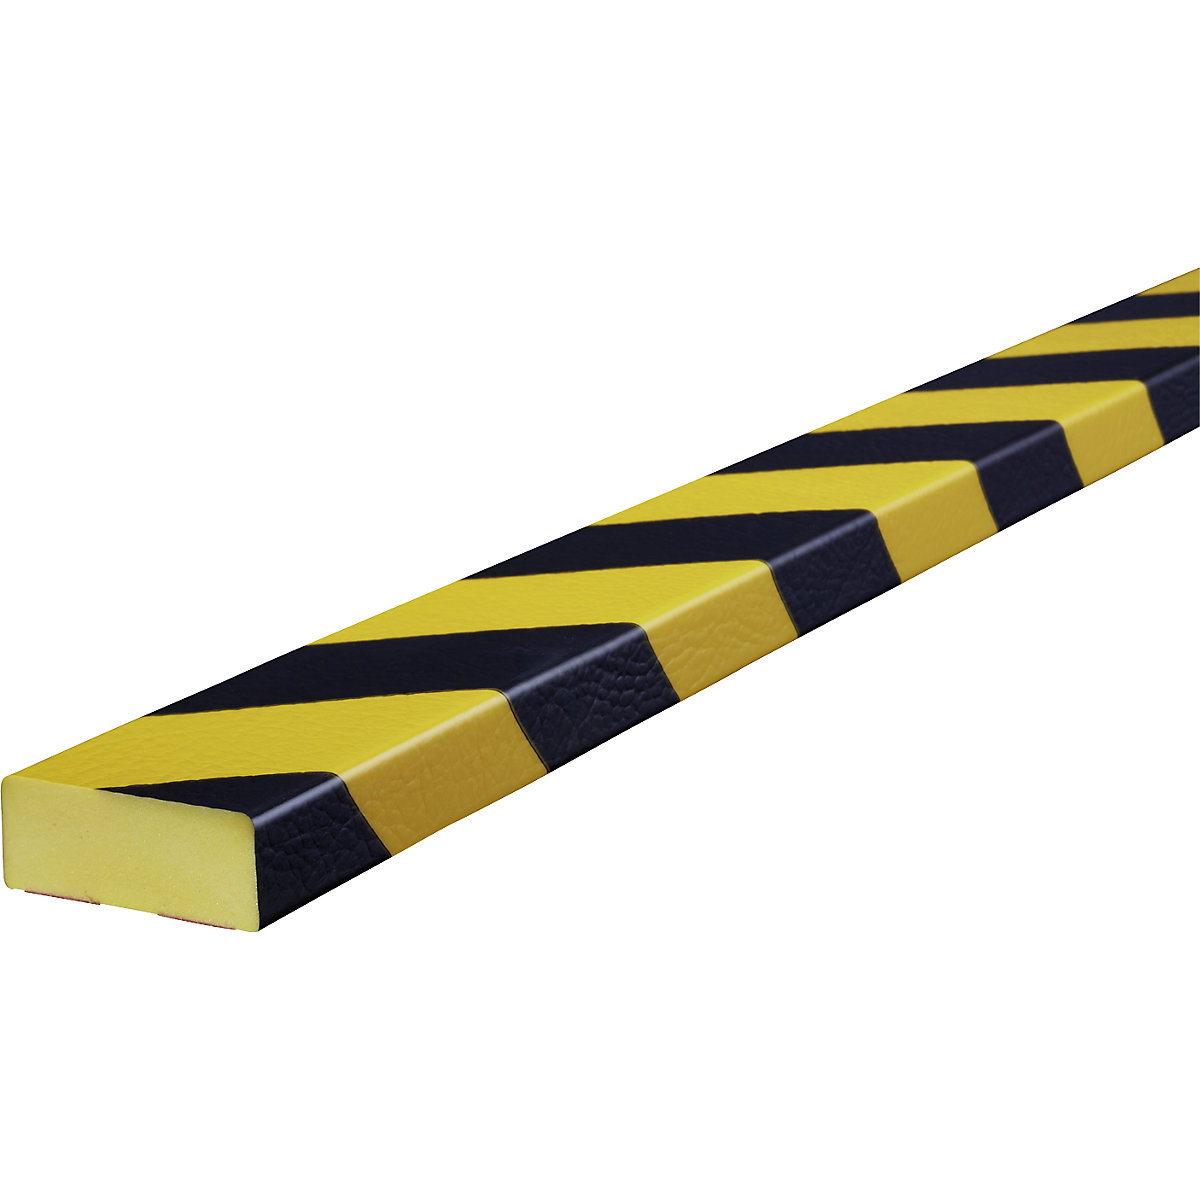 Proteção de superfícies Knuffi® – SHG, tipo D, unidade de 1 m, preto/amarelo-18